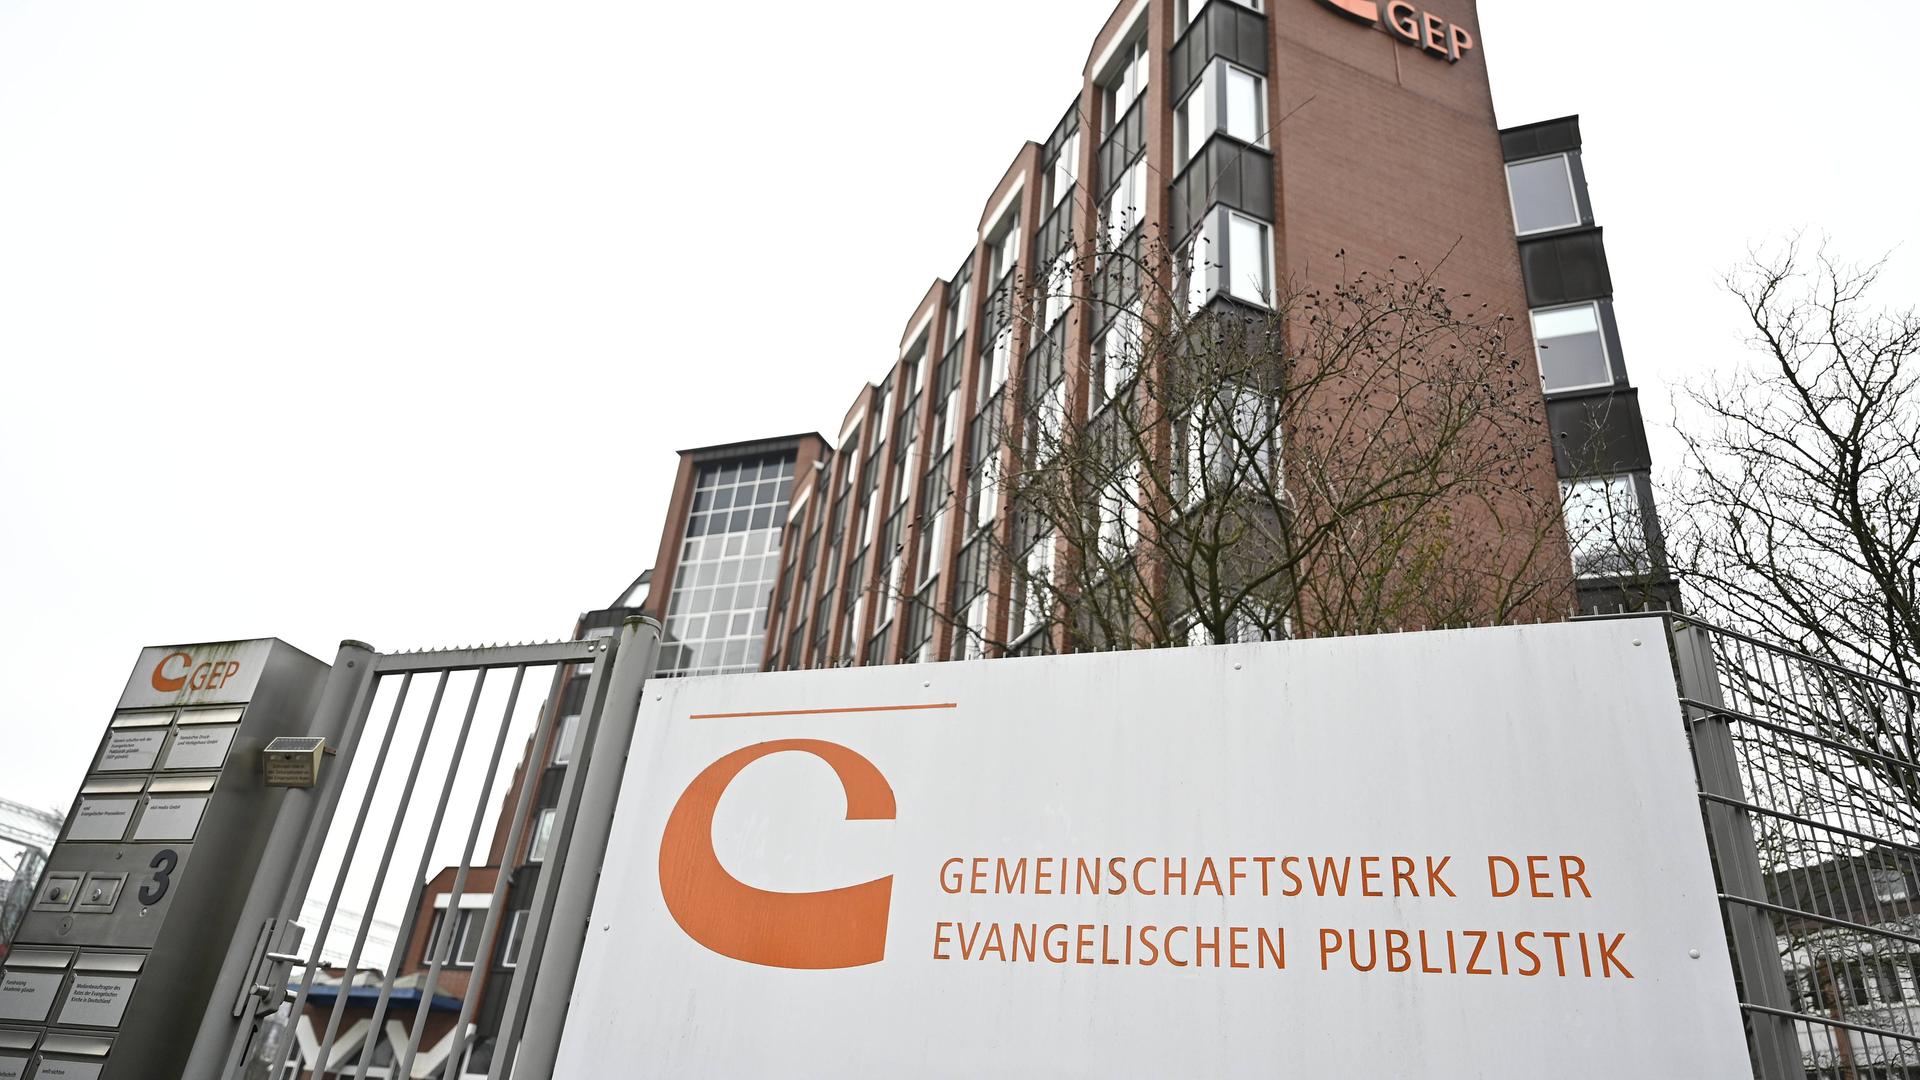 Die Zentrale des Gemeinschaftswerks der Evangelischen Publizistik, ein braunes Gebäude mit einem Schild im Vordergrund.